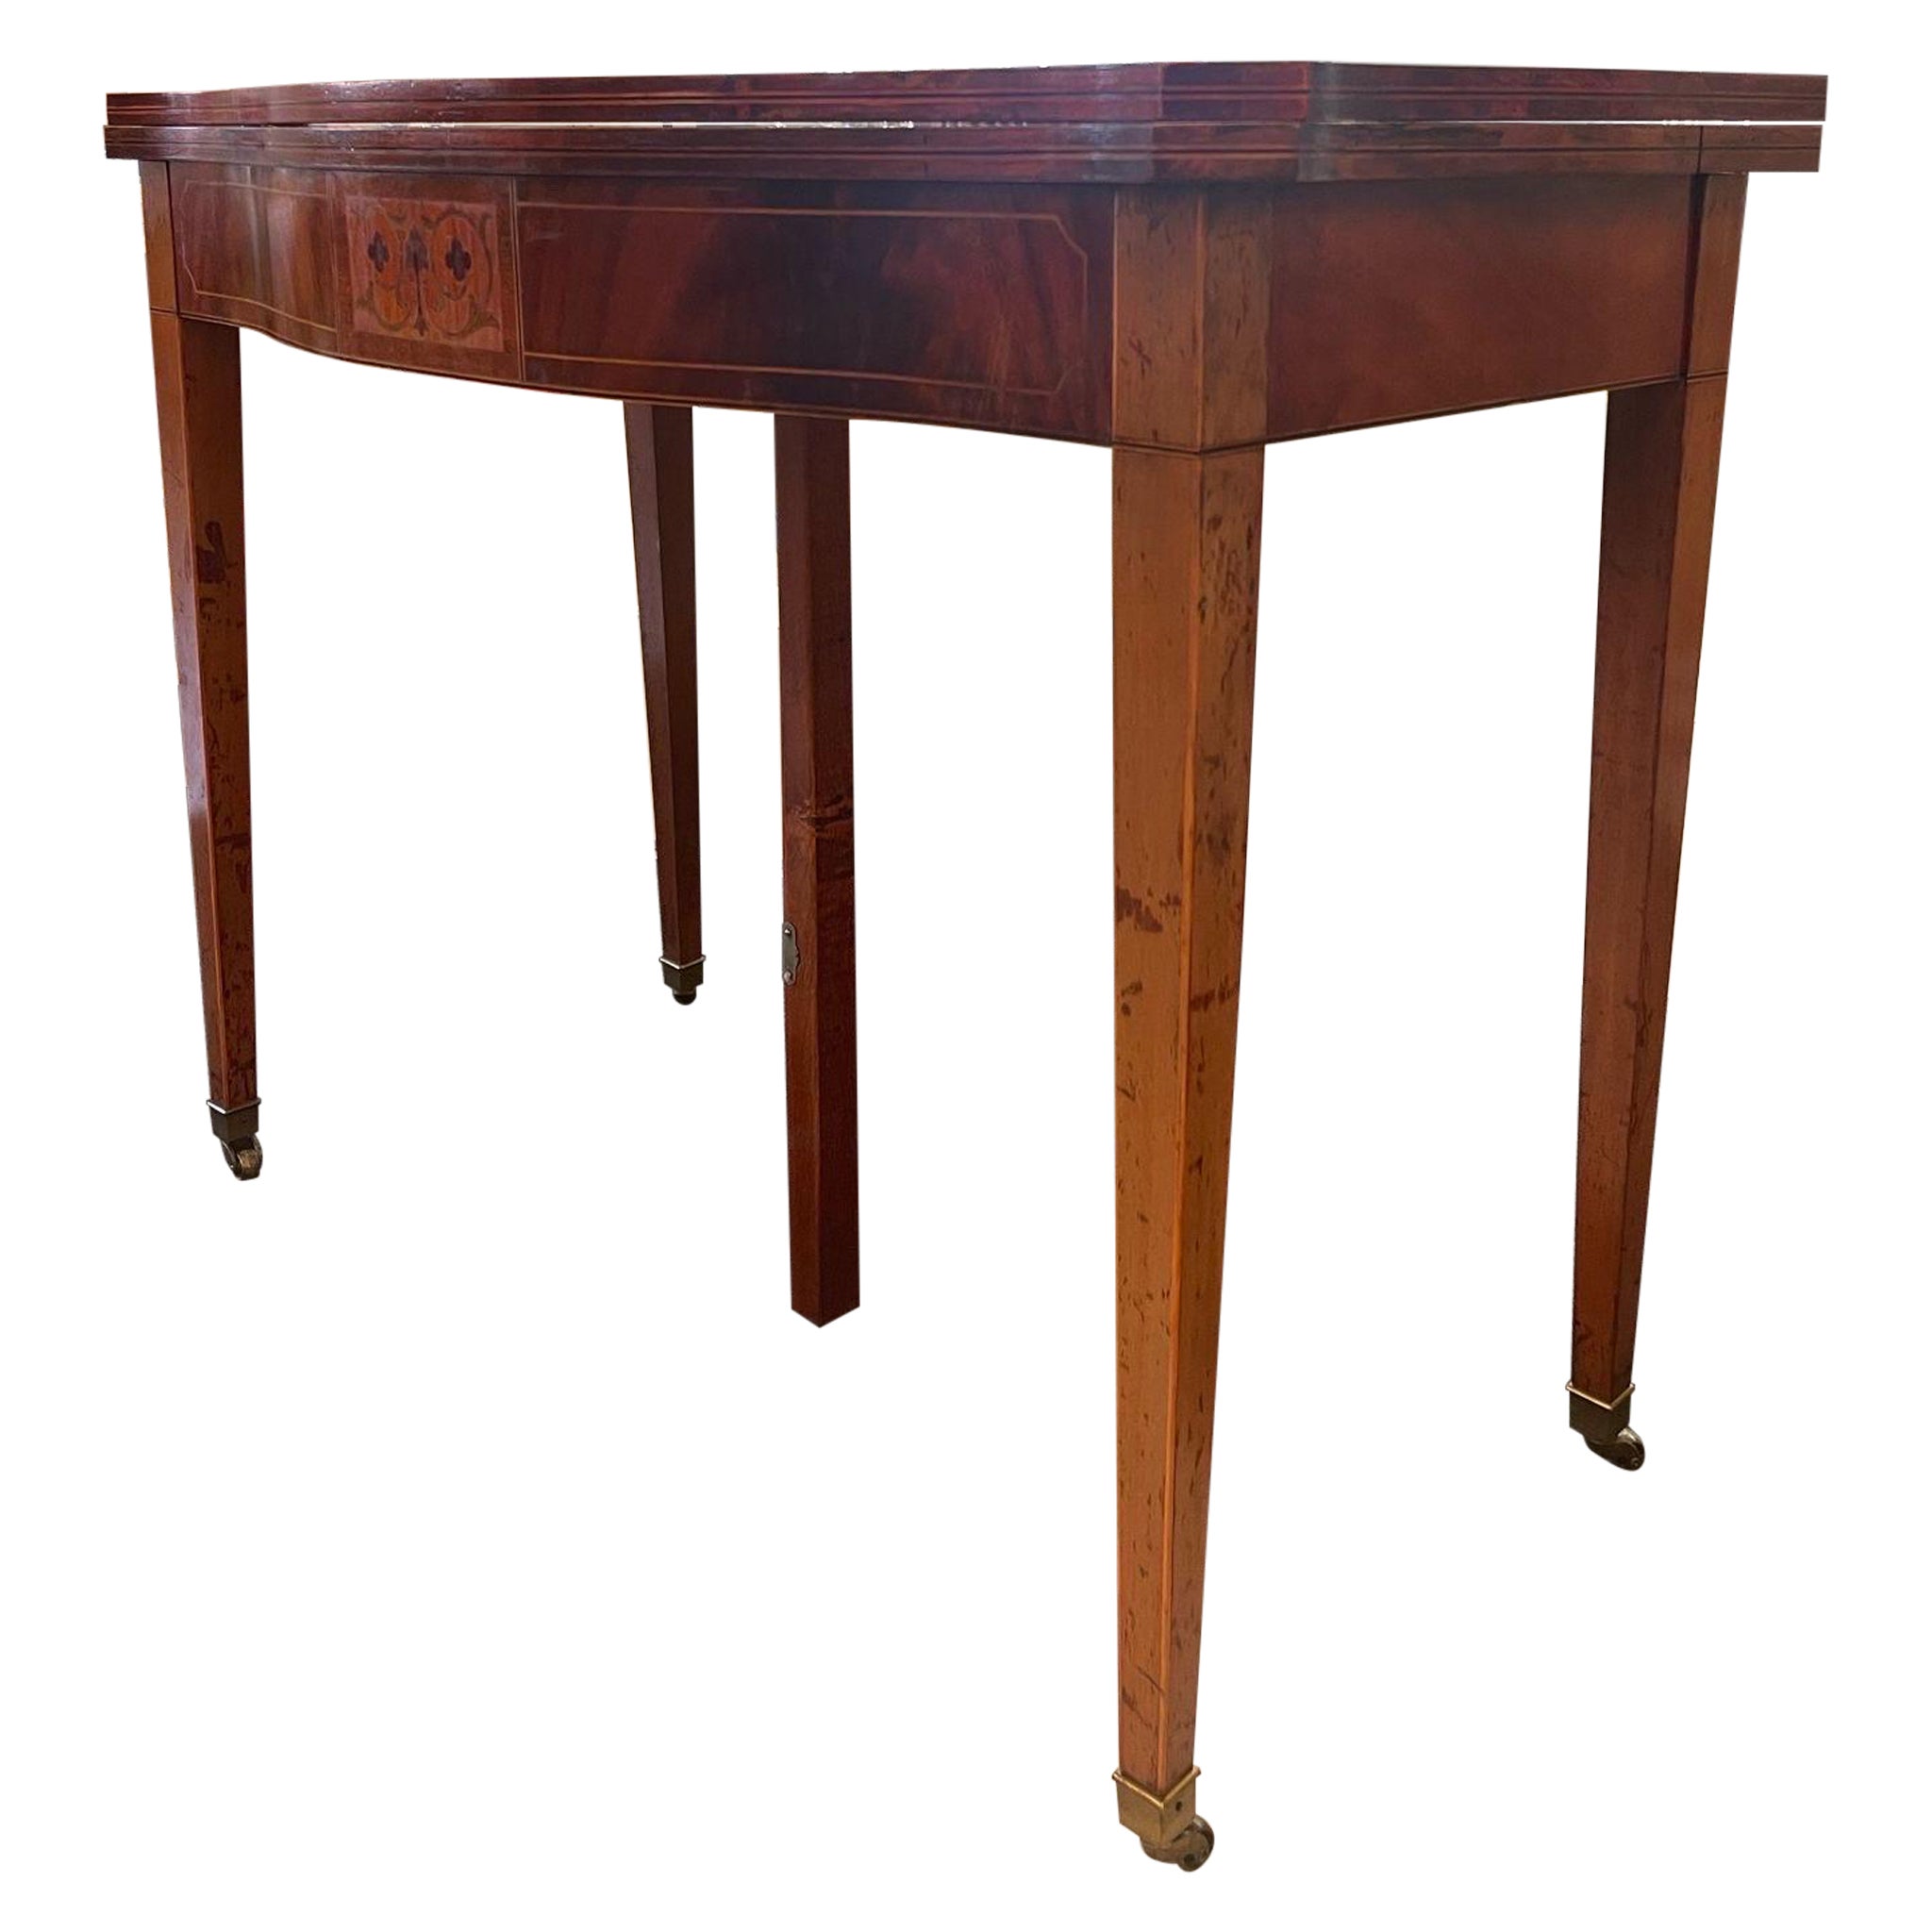 Table de salle à manger à rallonge en bois vintage avec incrustations en bois.